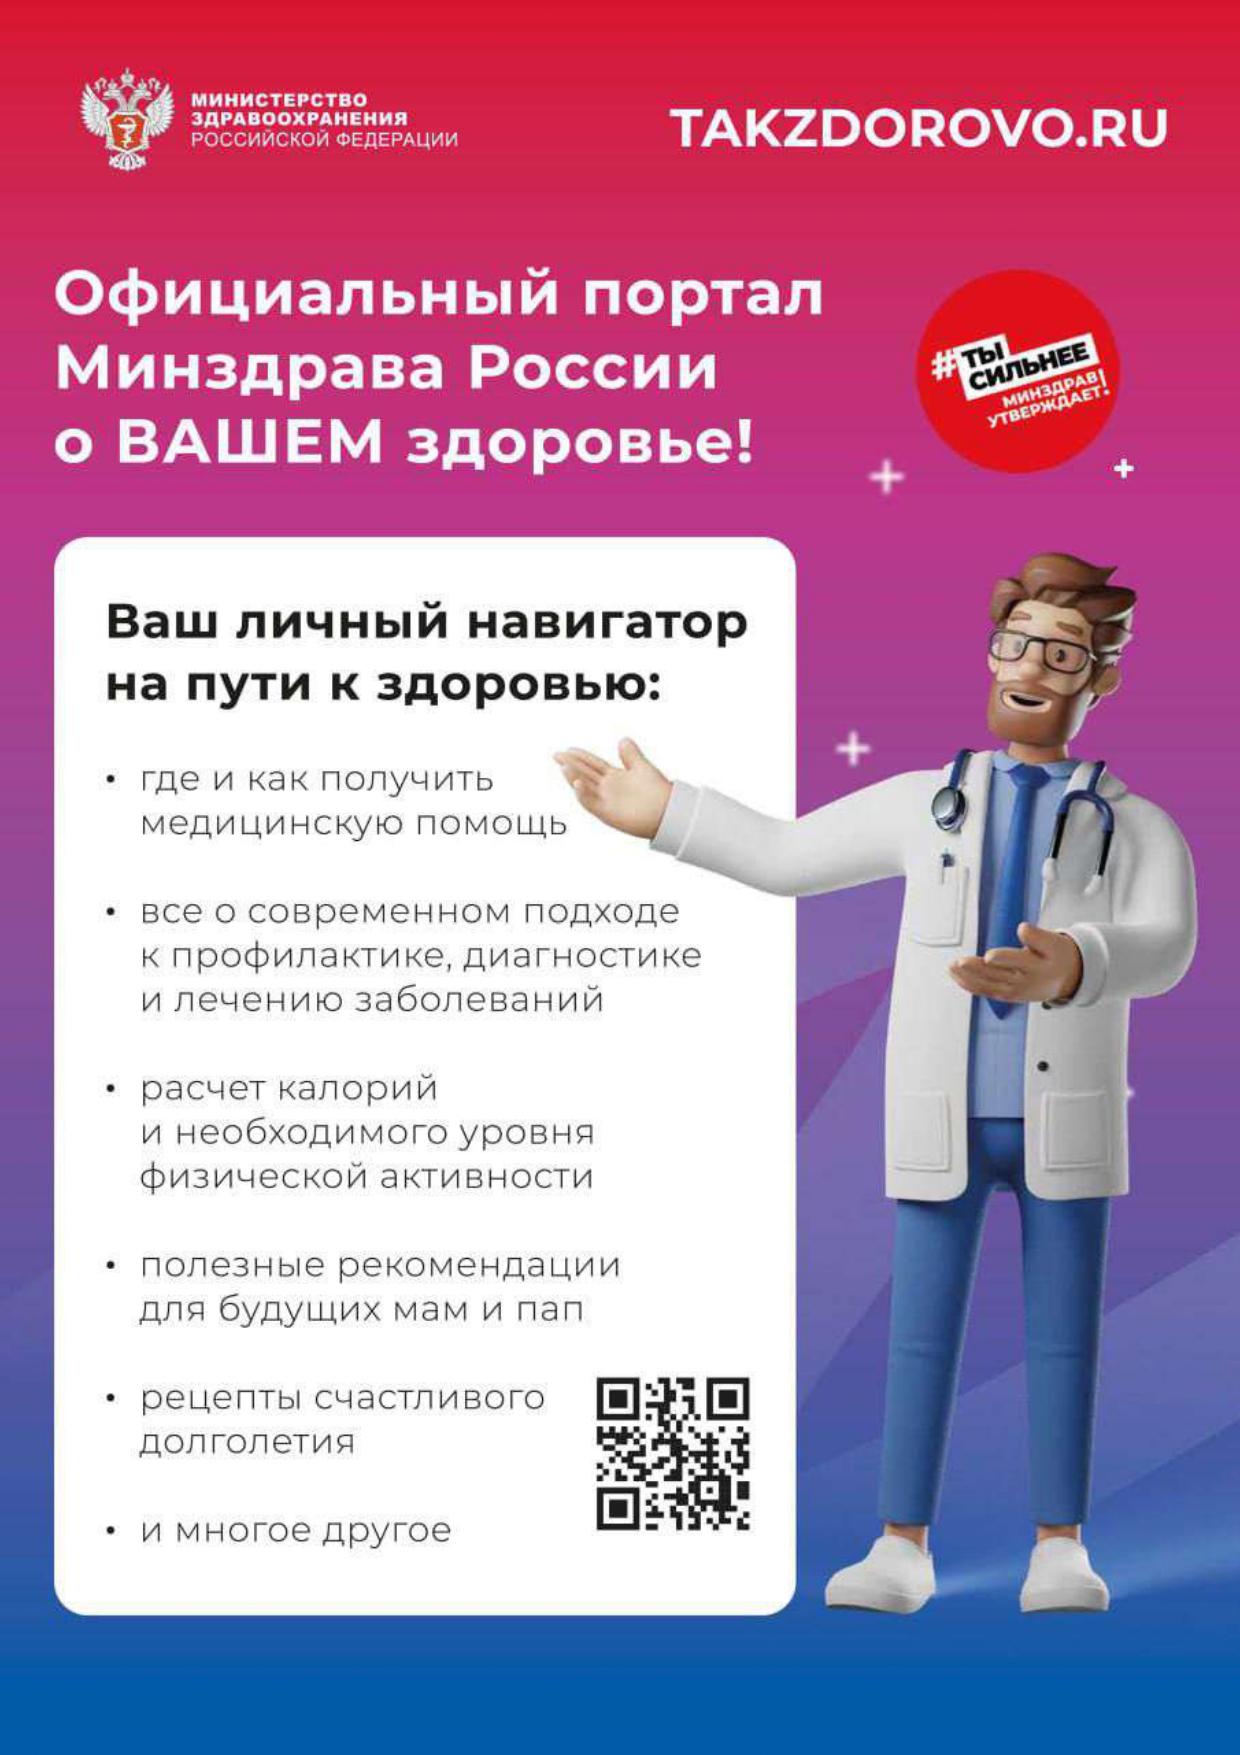 О портале Takzdorovo.ru - актуальная информация и полезные советы о том, как поддерживать свое здоровье и вести активный образ жизни.